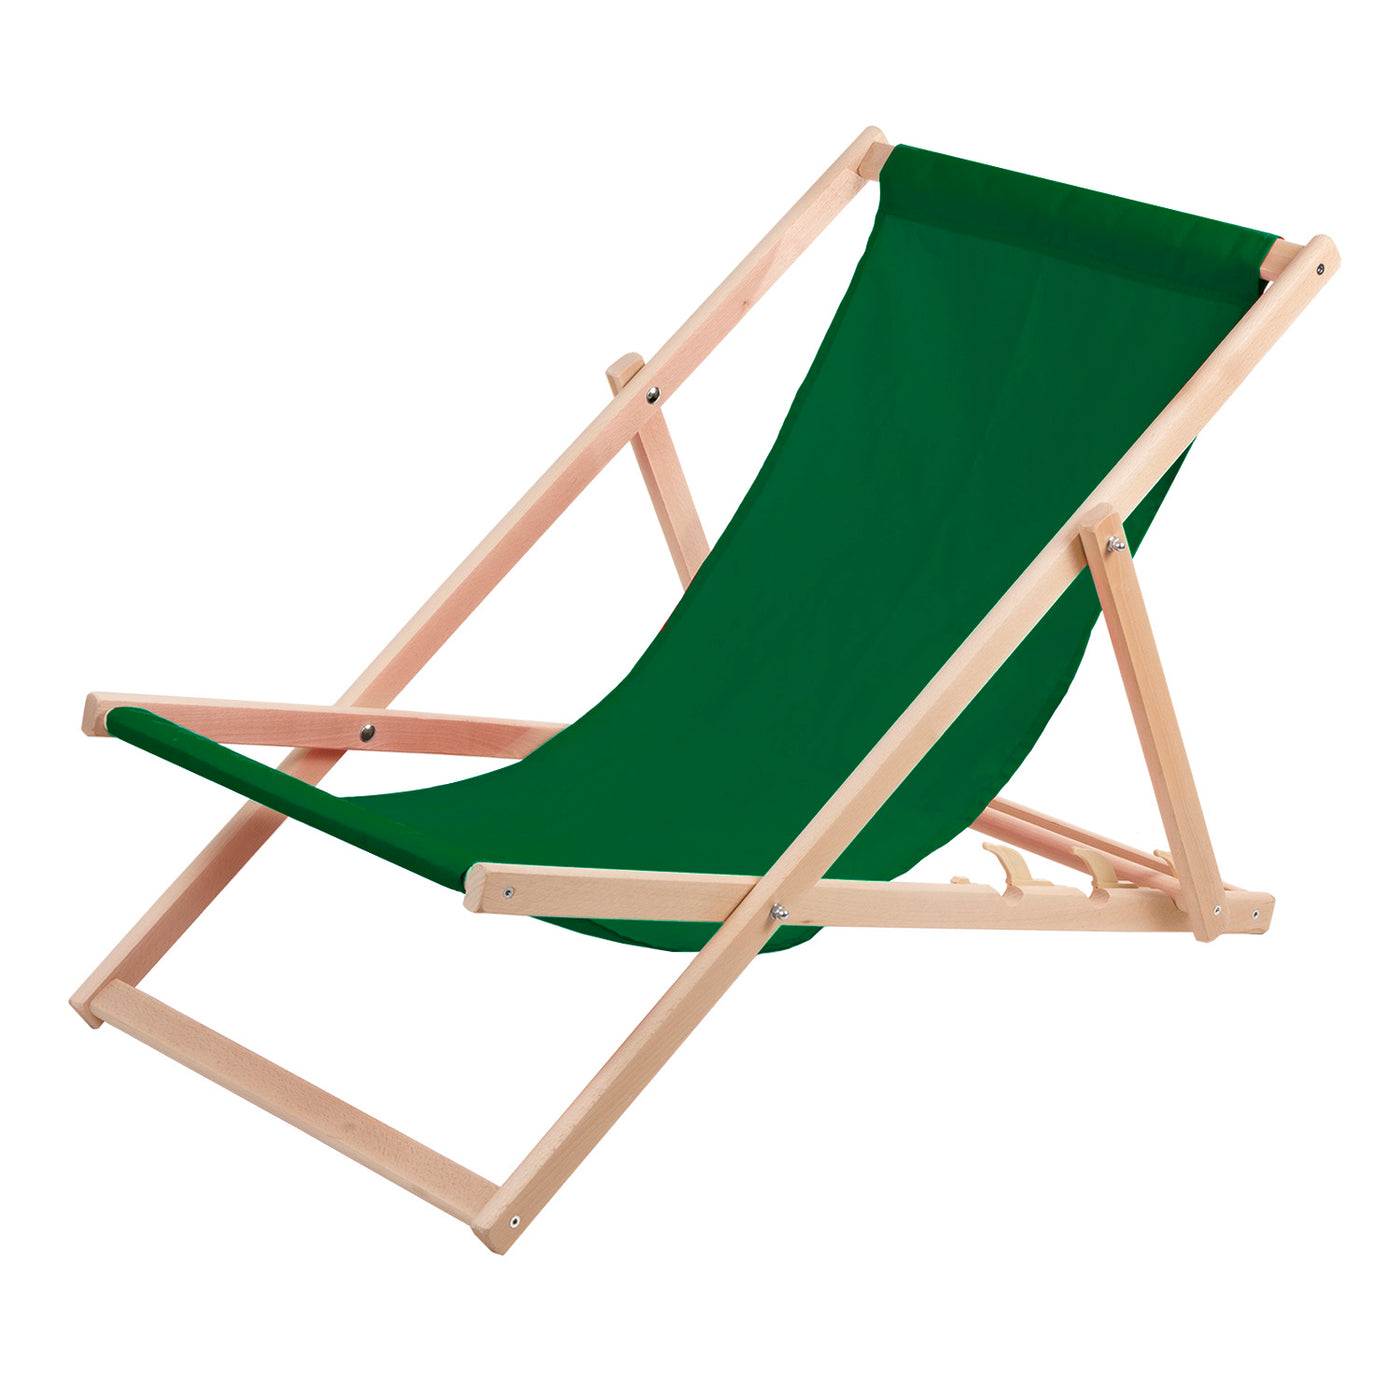 Leżak z drewna bukowego Woodok, zielony, idealne na plażę, balkon, taras